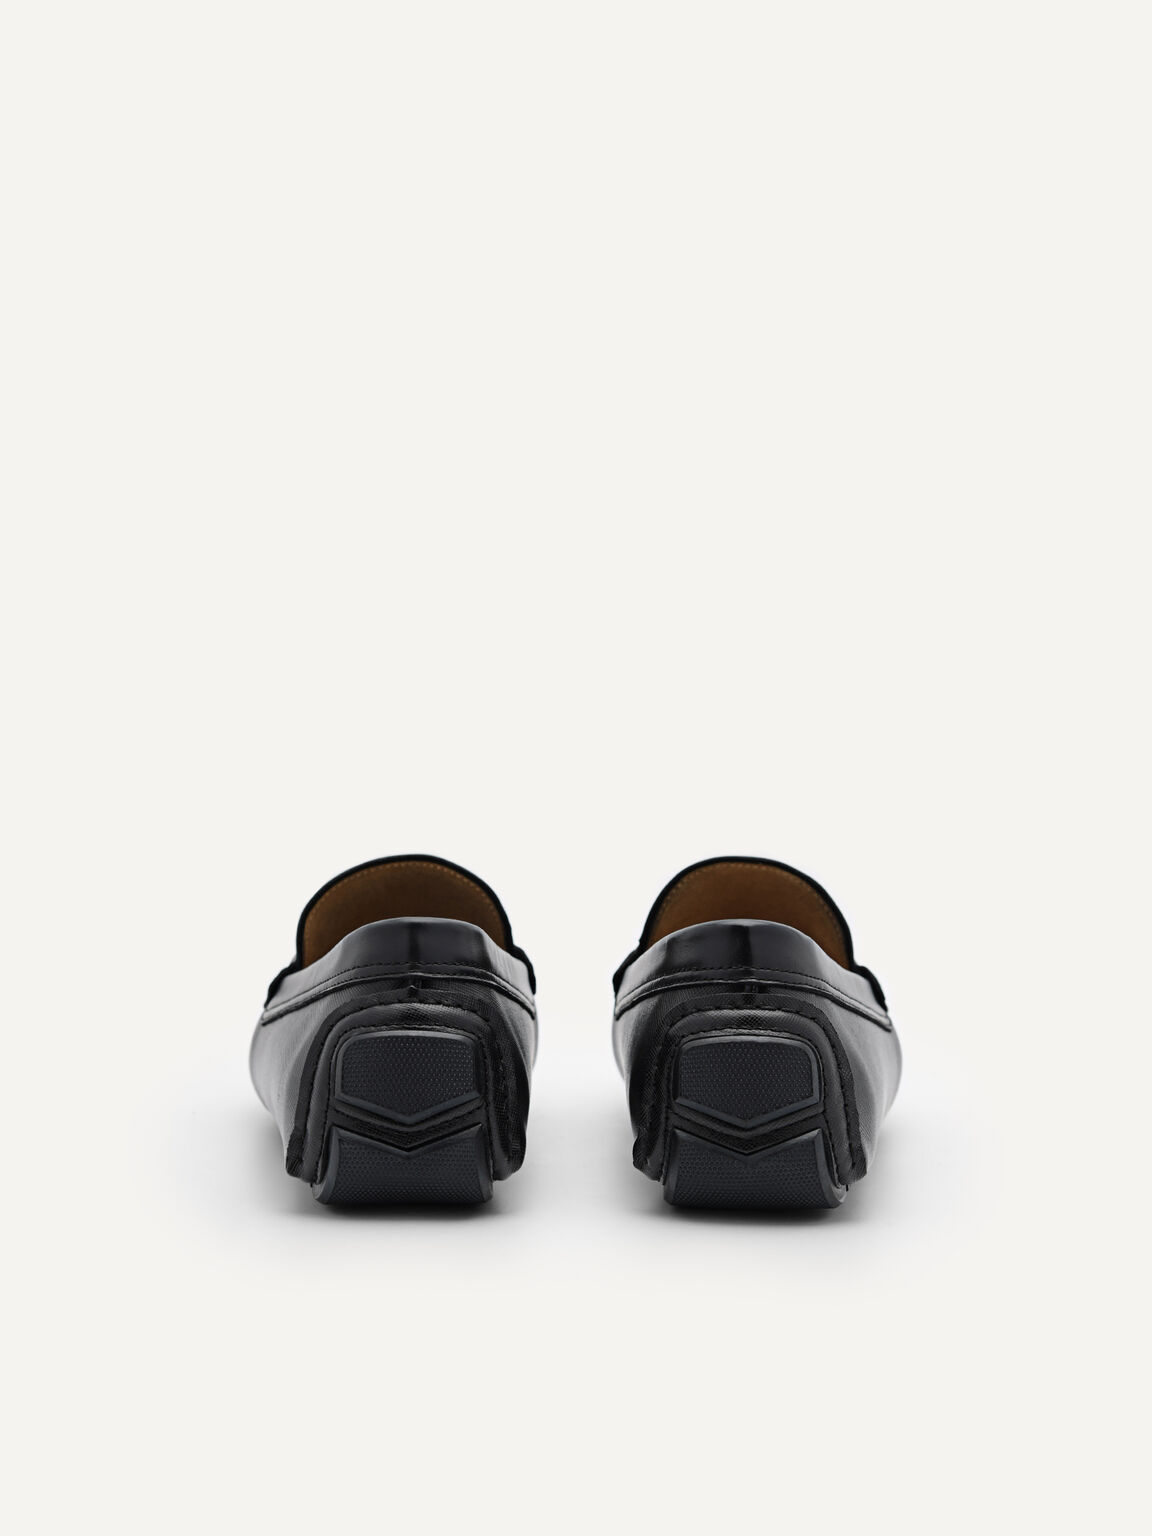 Antonio皮革莫卡辛鞋, 黑色